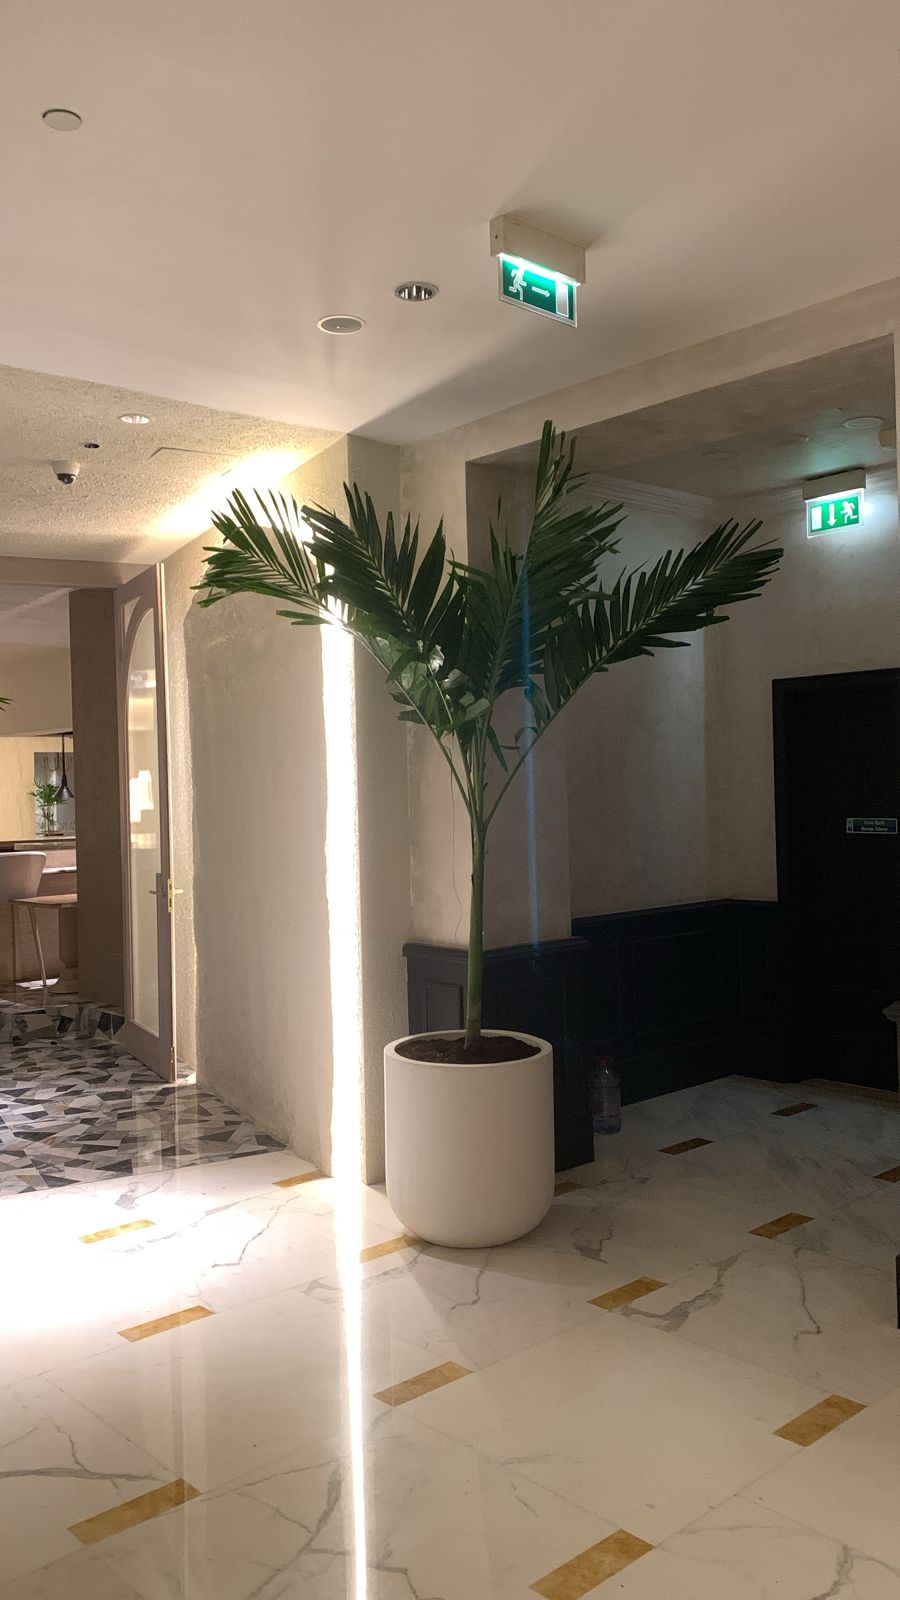 Vietchia Palm Indoor In Fiber Pot 2.5m to 3m